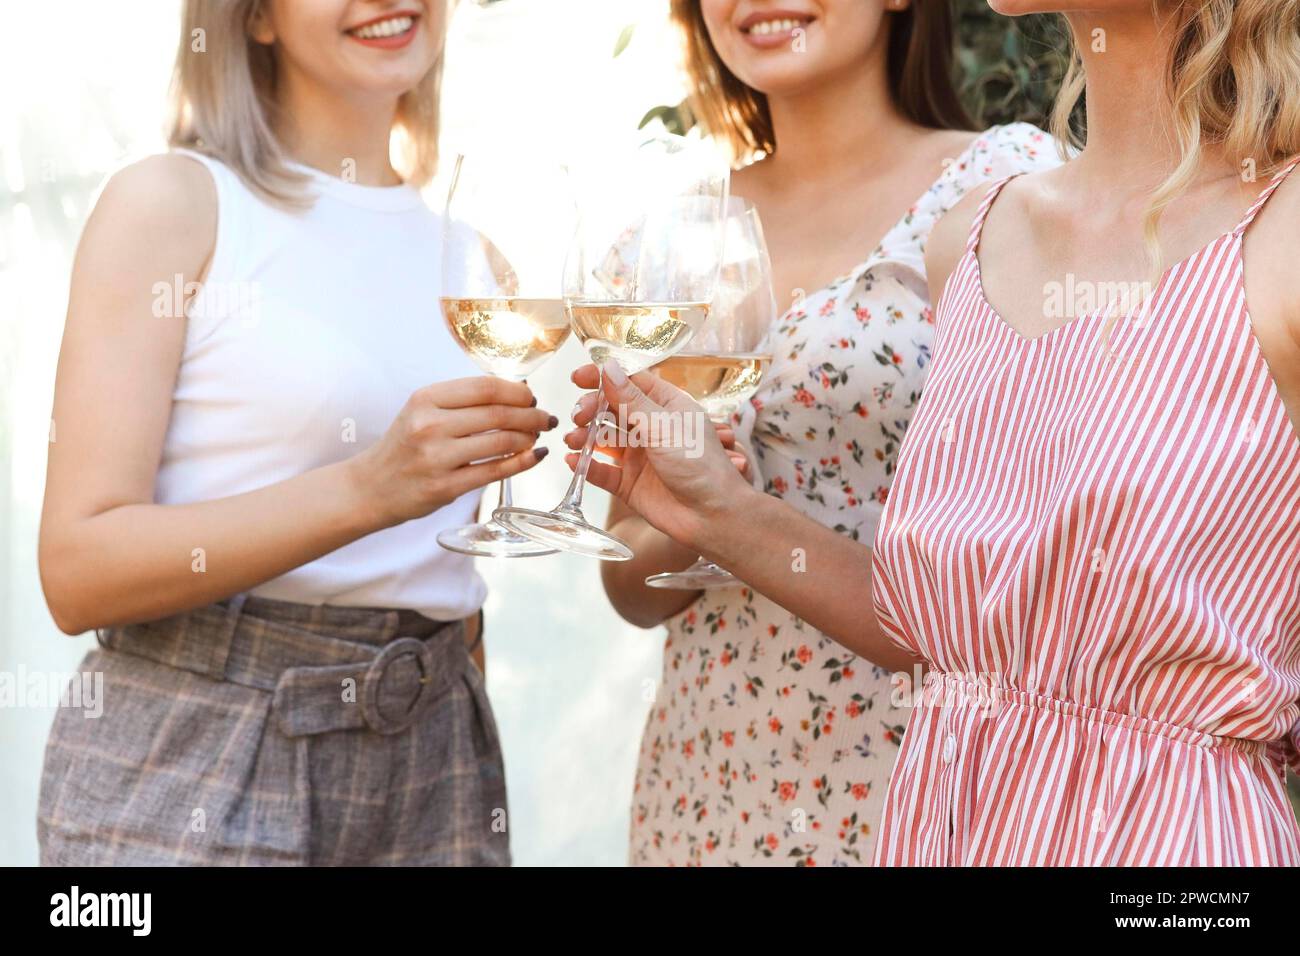 Da sopra anonime girlfriends cigliare bicchieri di vino mentre si siede su coperte vicino a piatti con frutta durante il picnic Foto Stock